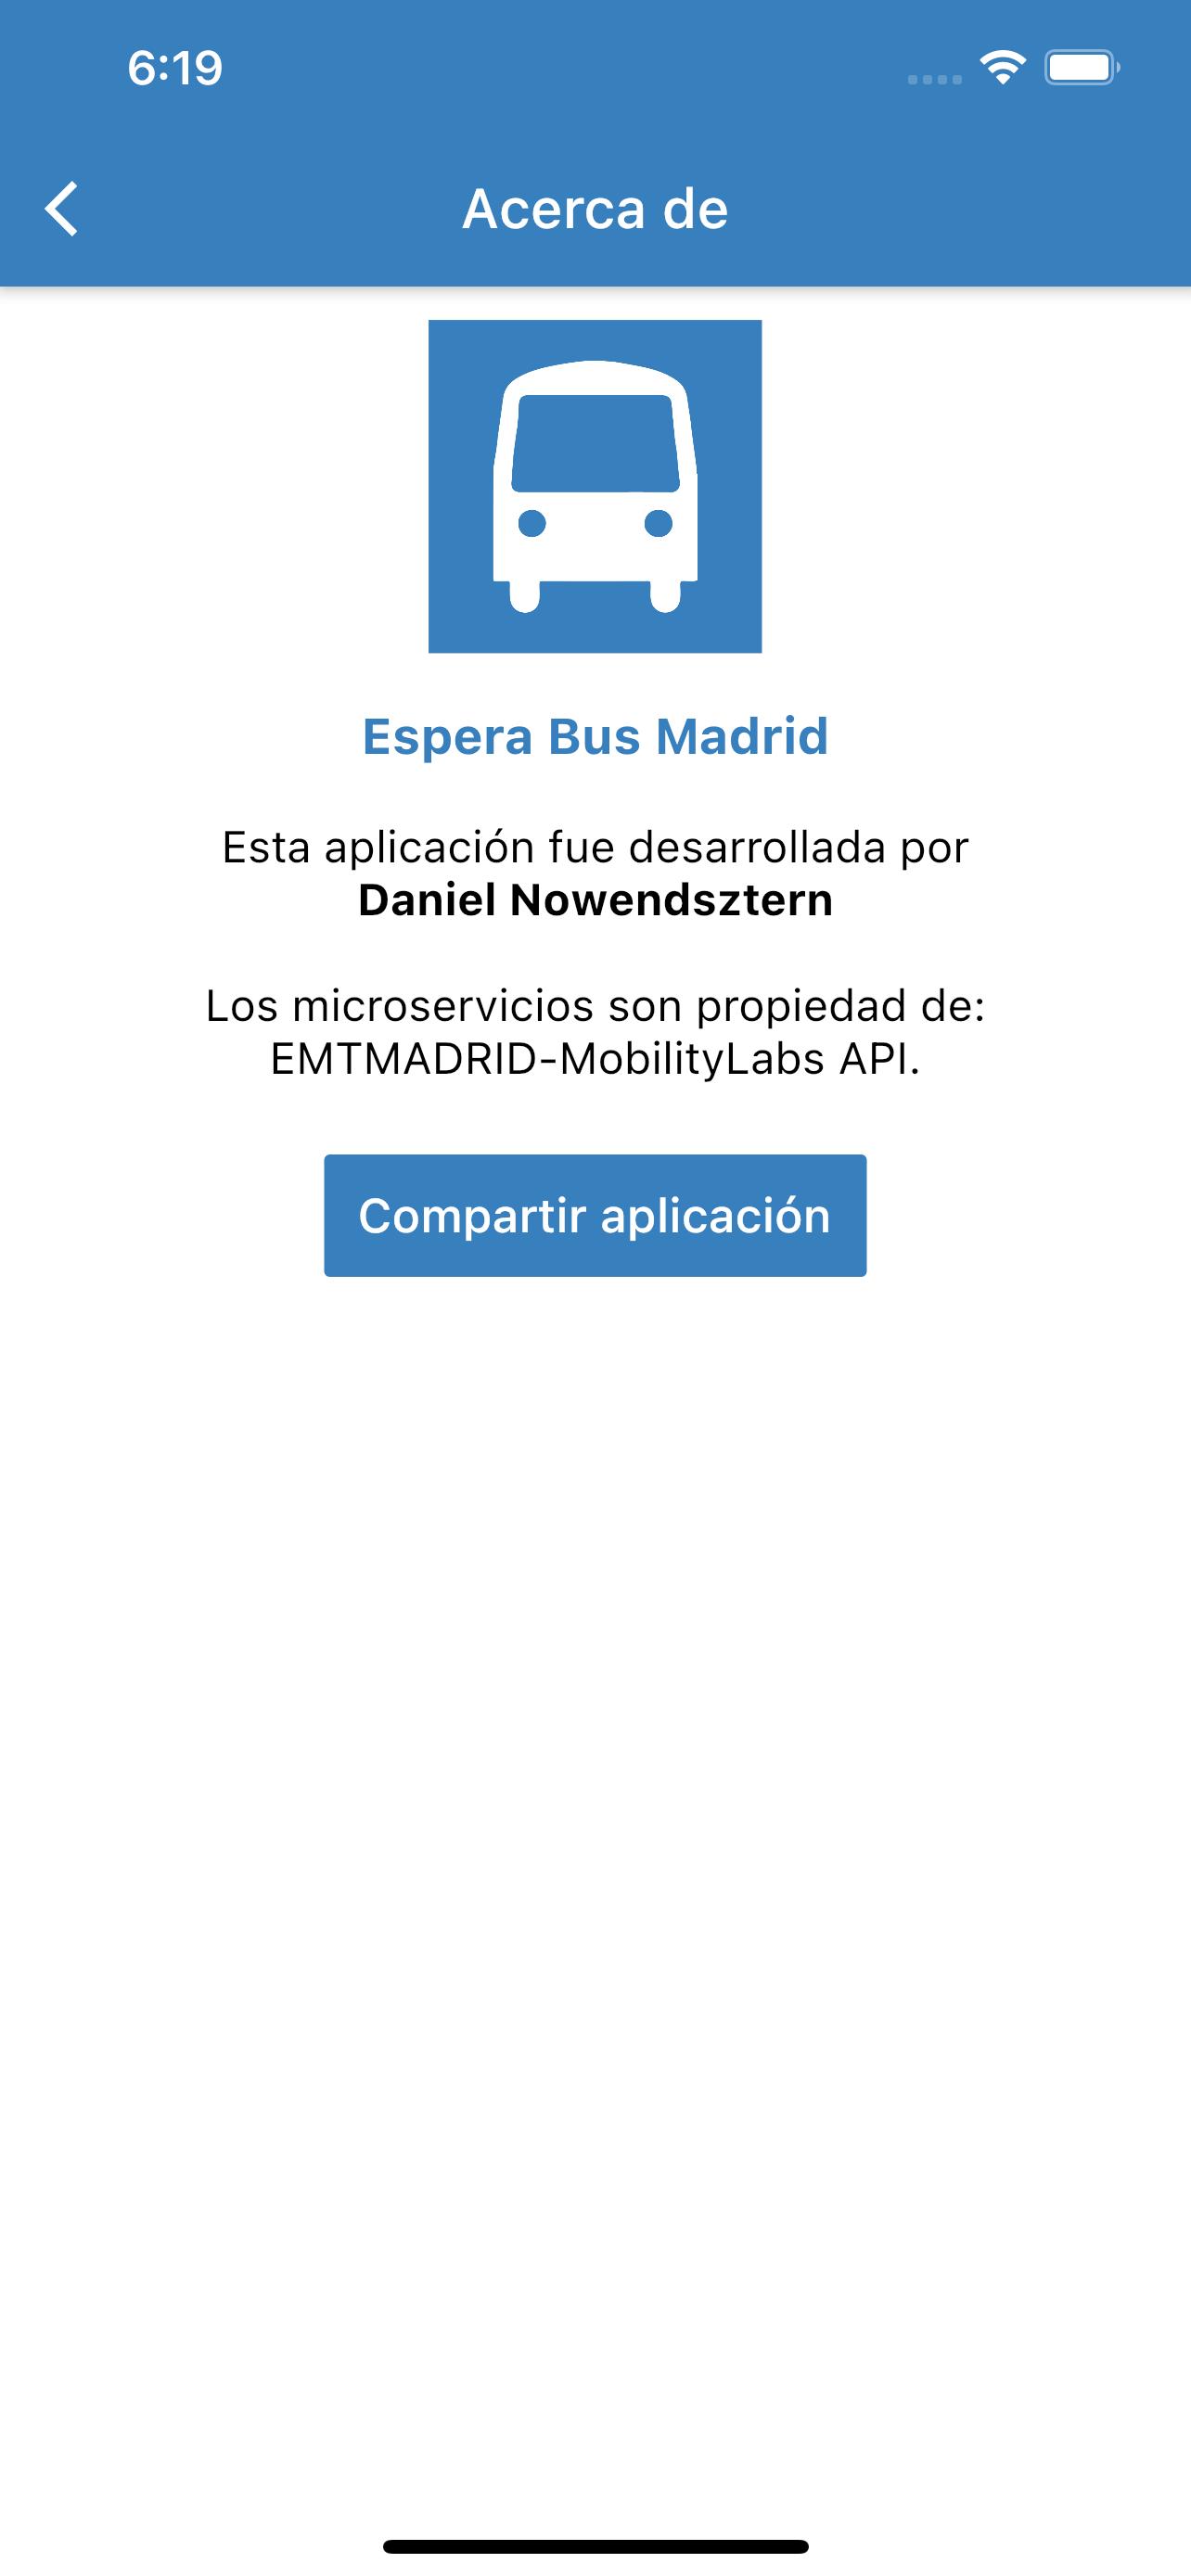 Espera Bus Madrid